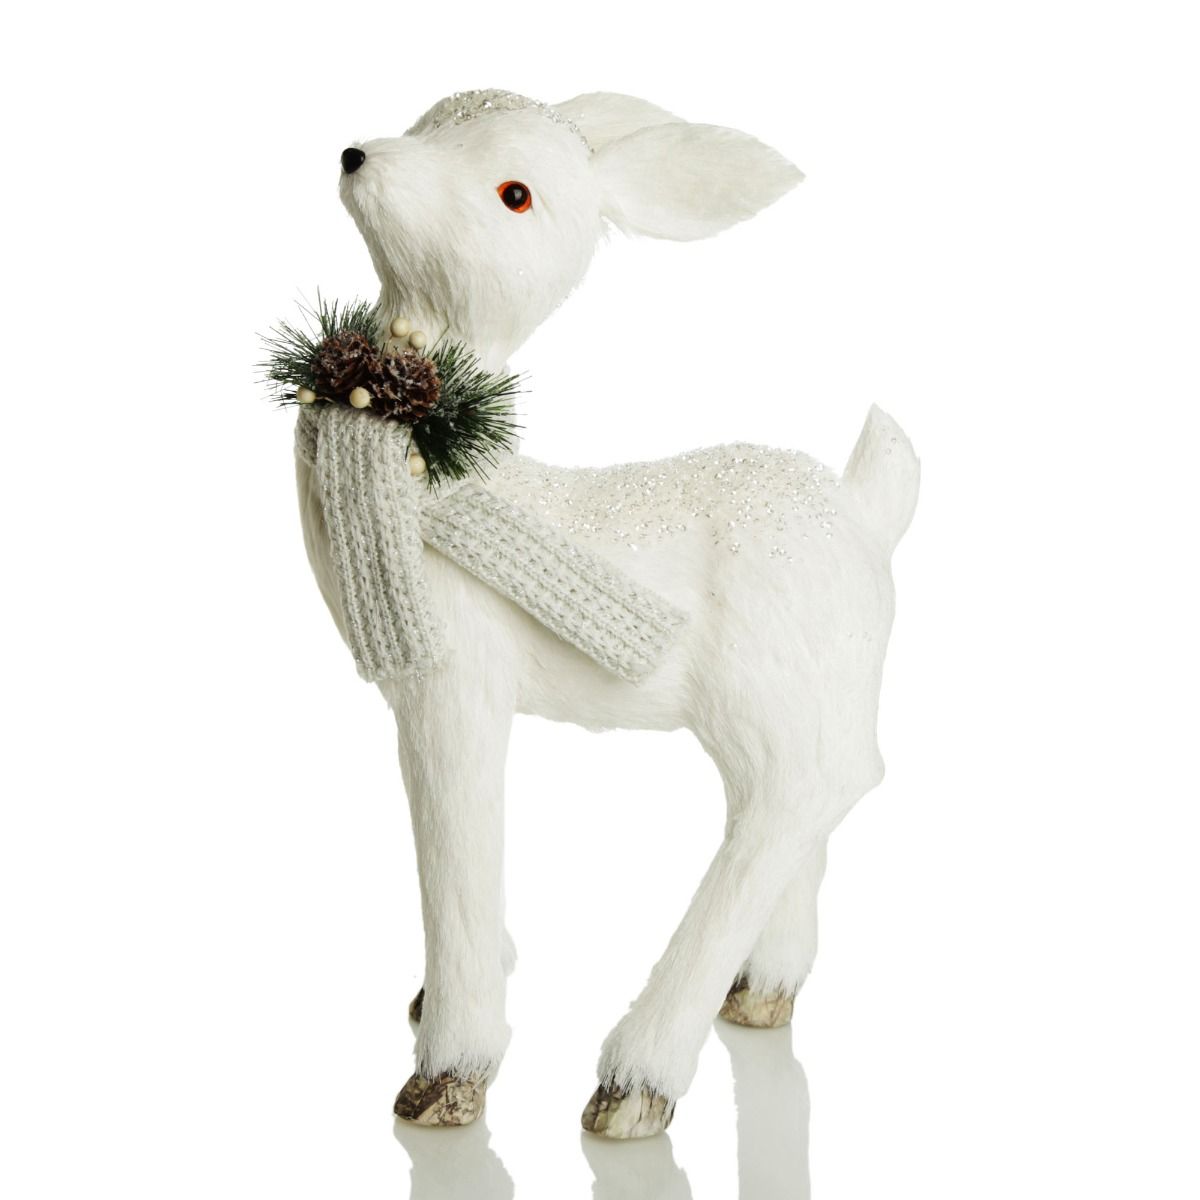 Buy Glittery White Standing Deer Online | The Christmas Cart